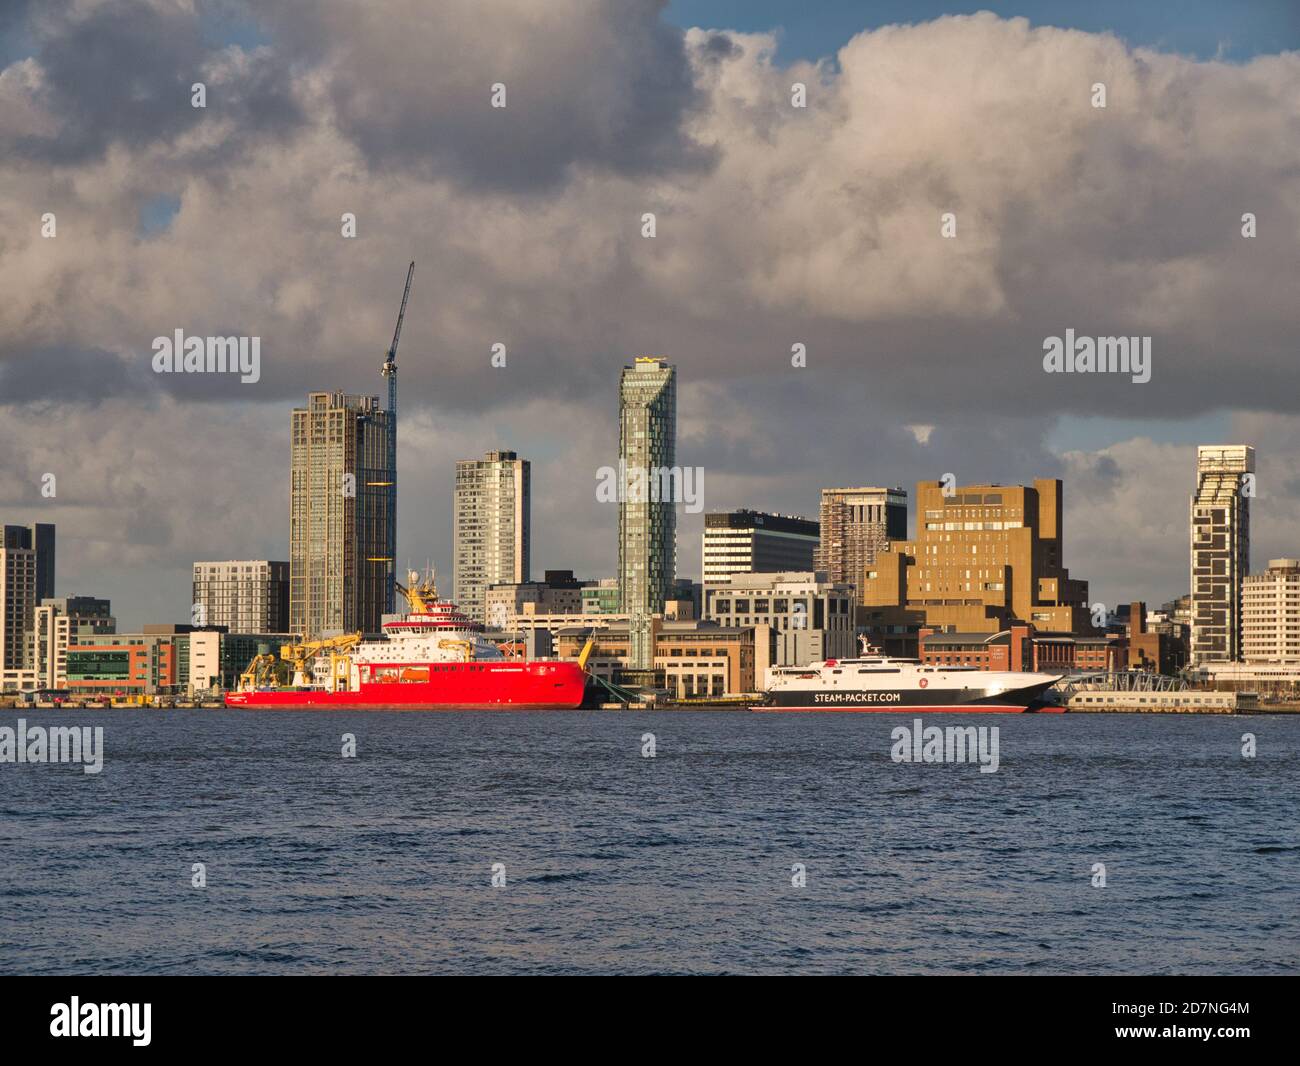 Die RRS Sir David Attenborough vertäute kurz nach dem Start an Liverpools historischer, zum UNESCO-Weltkulturerbe gehörter Uferpromenade. Die Isle of man Ferry erscheint auf dem Rig Stockfoto